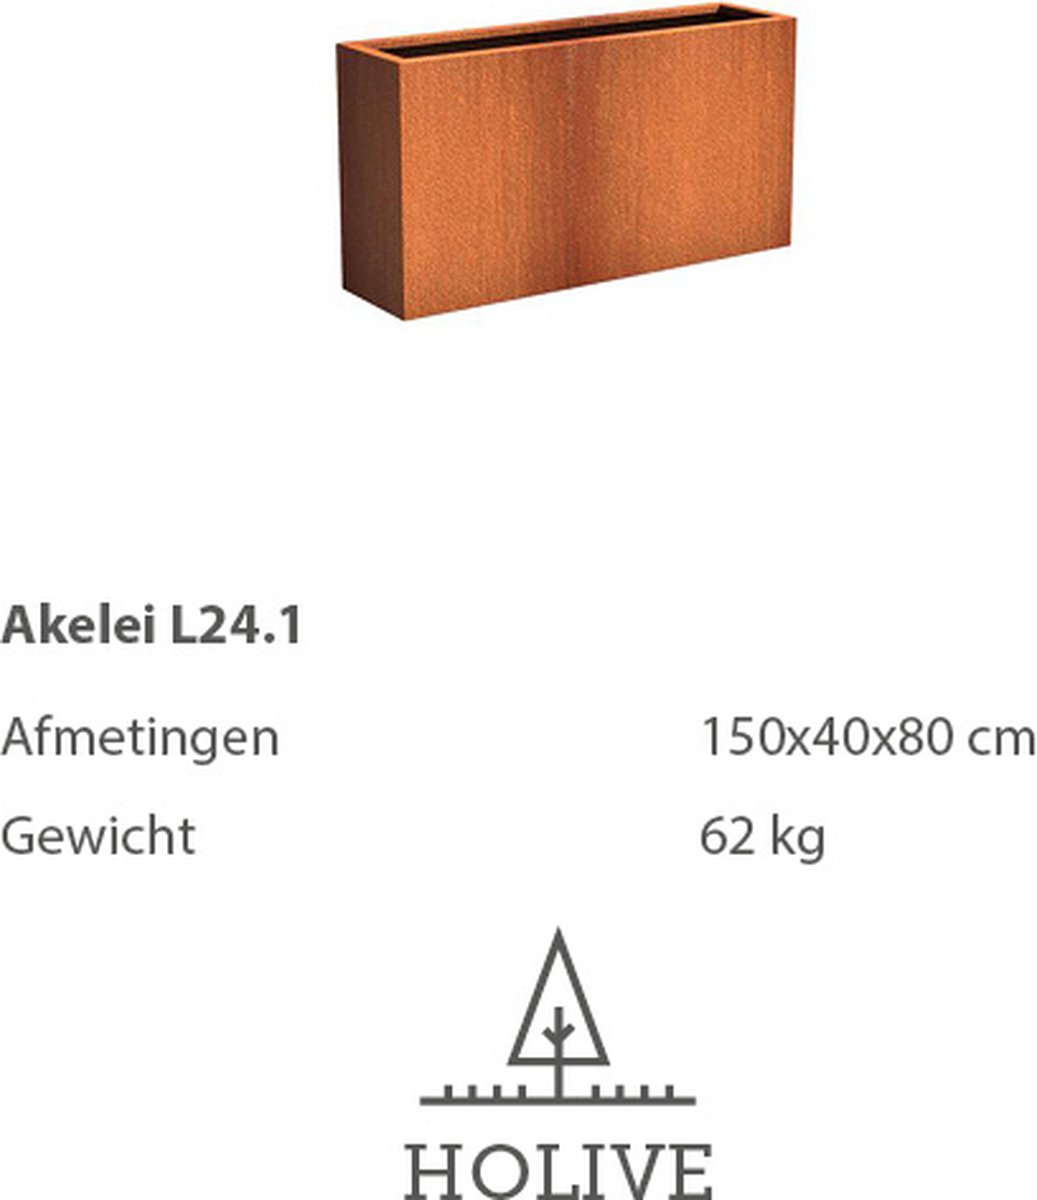 Cortenstaal Akelei L24.1 Rechthoek 150x40x80 cm. Plantenbak